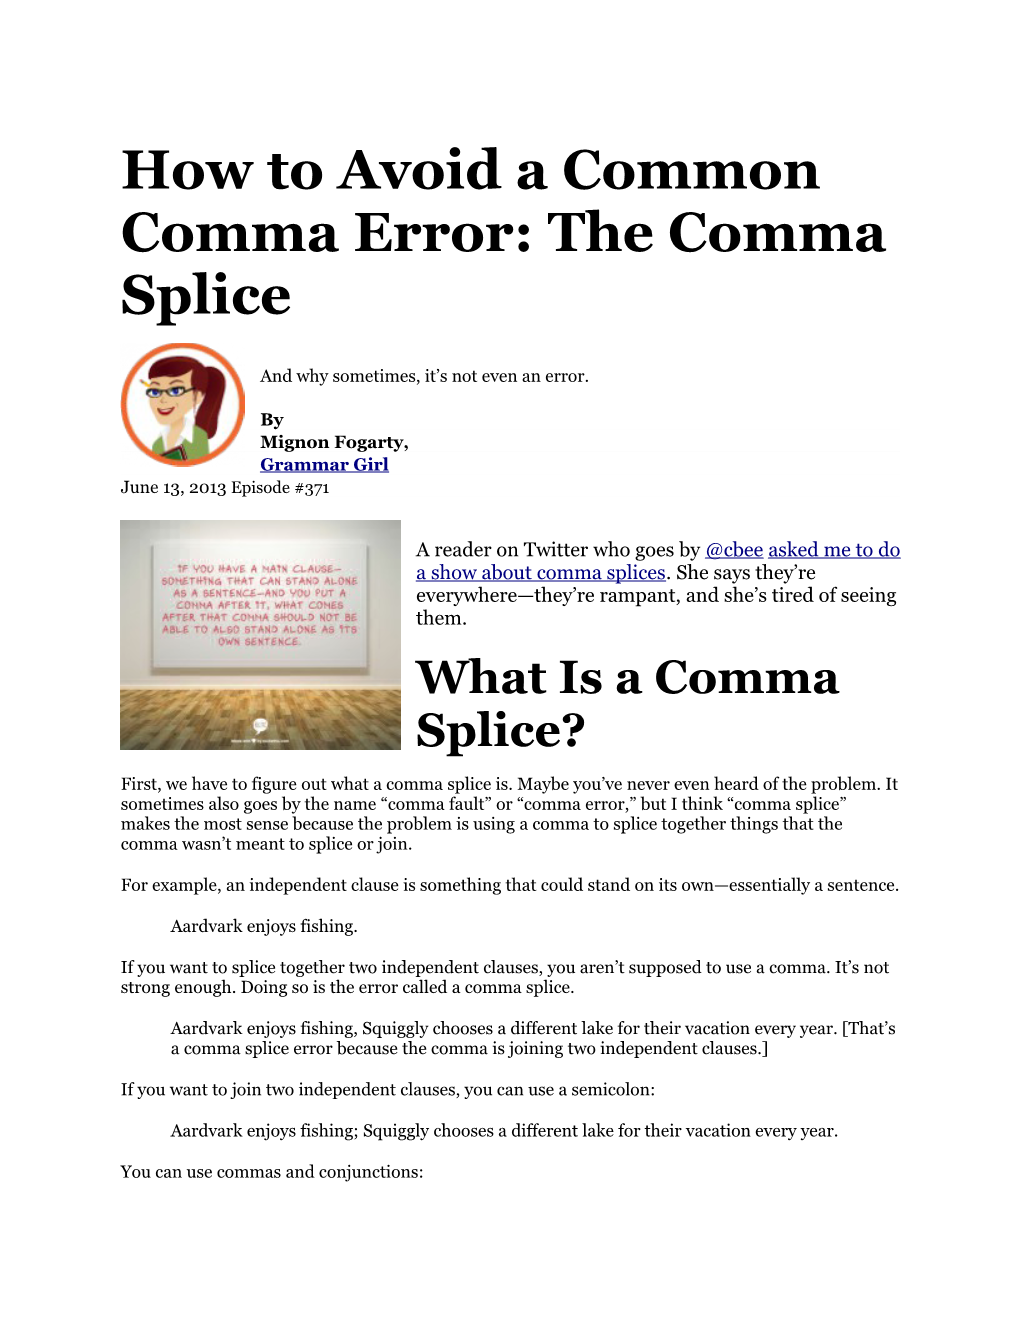 How to Avoid a Common Comma Error: the Comma Splice